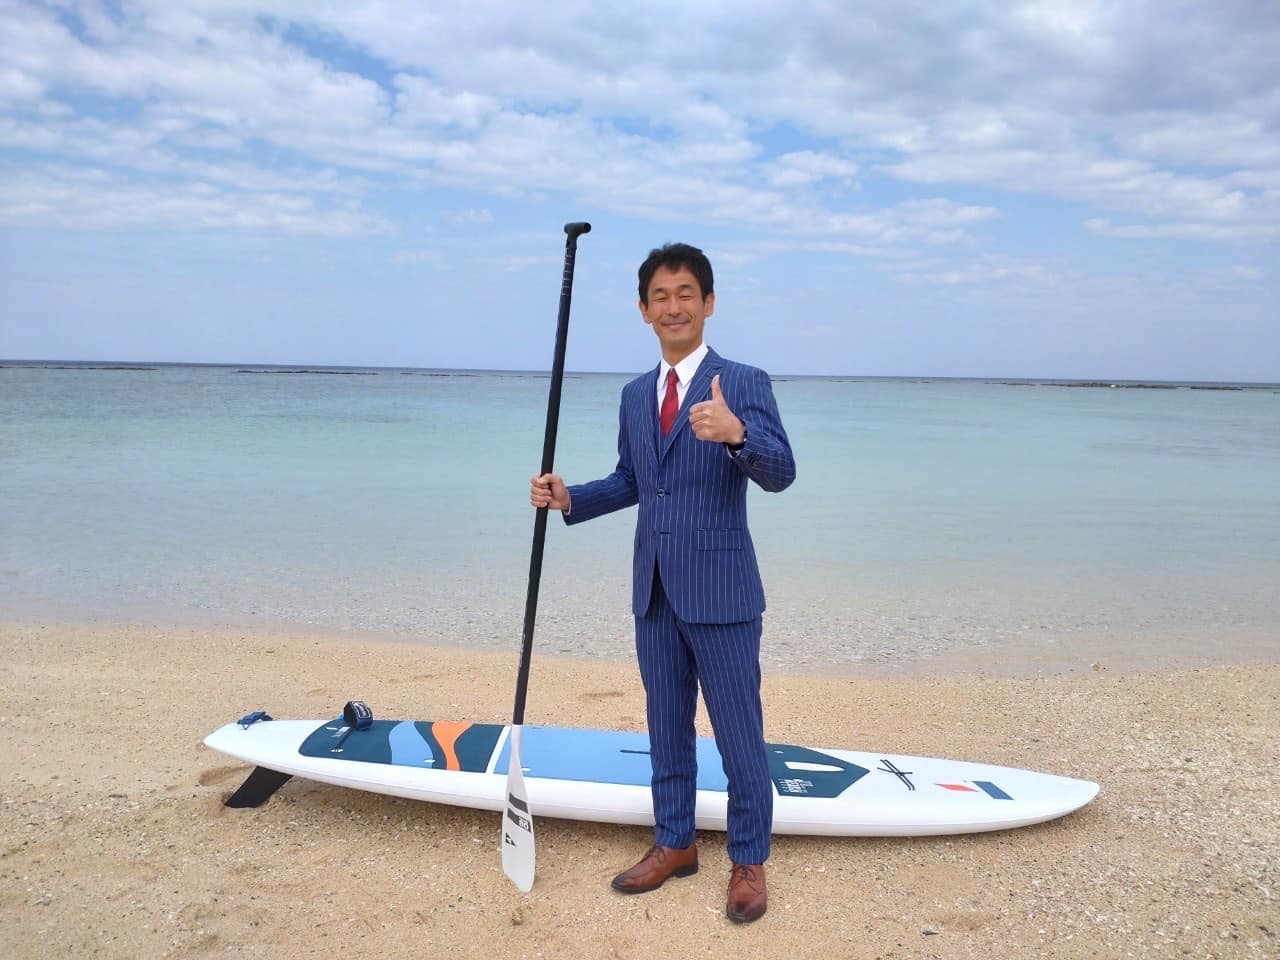 実は先日、世界自然遺産に認定された徳之島にて、釣りの合間に、オーダースーツでSUP(Stand Up Paddleboard)に挑戦して参りました！